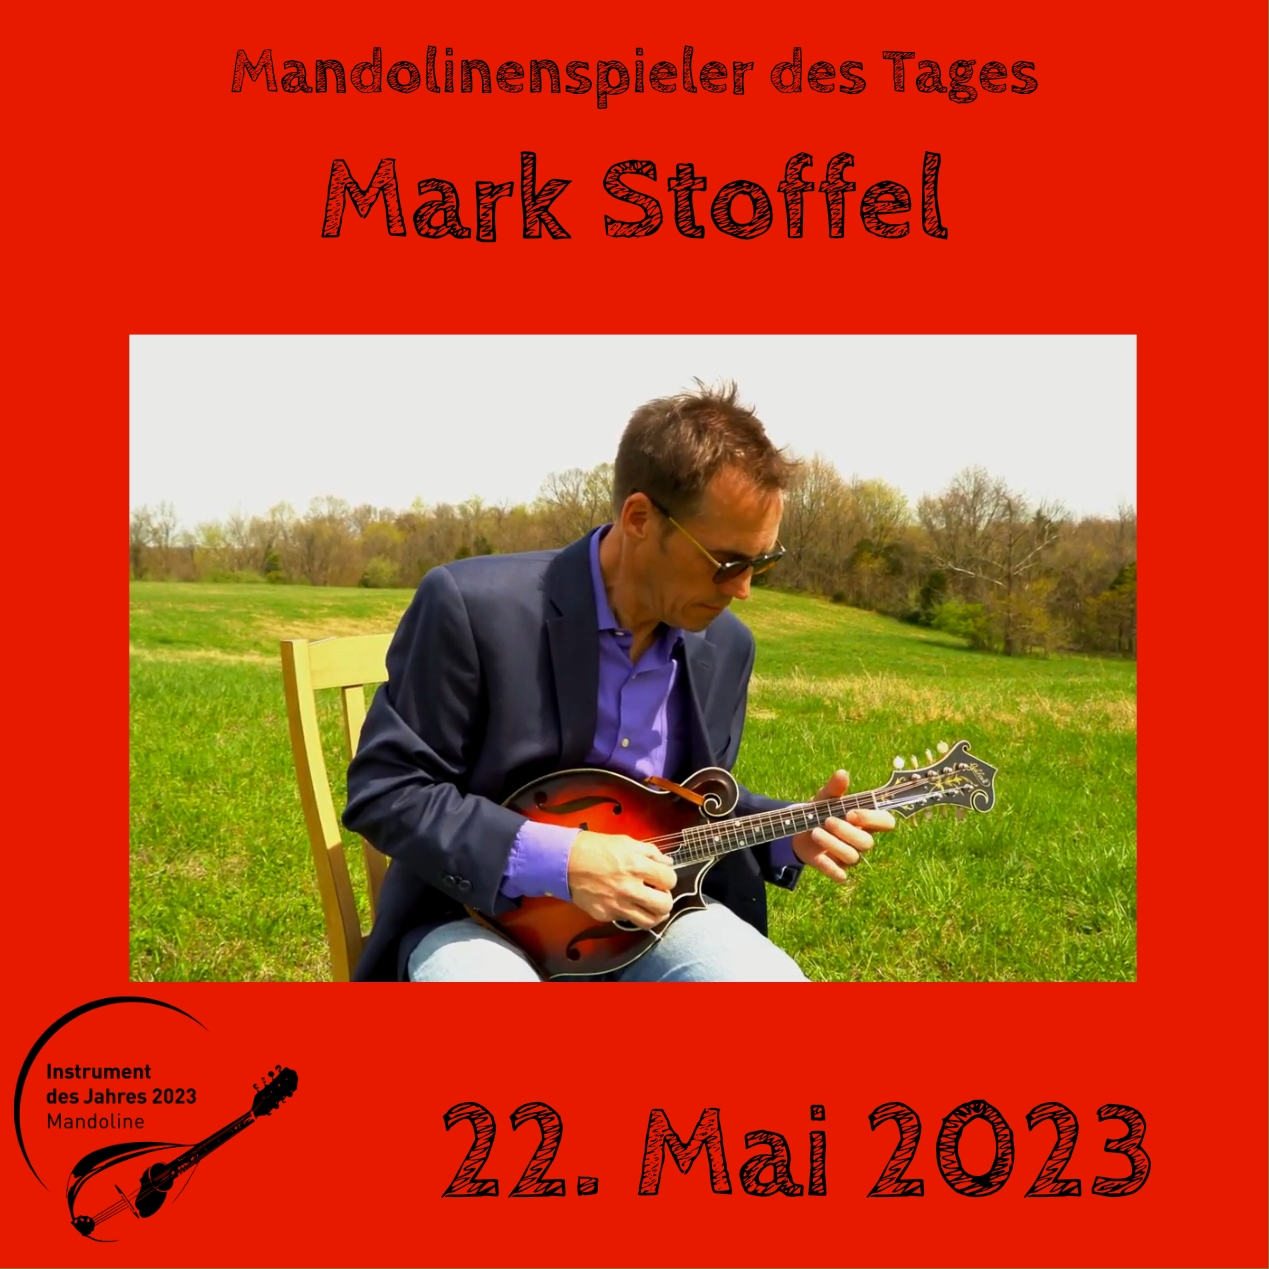 Mark Stoffel Mandoline Instrument des Jahres 2023 Mandolinenspieler Mandolinenspielerin des Tages